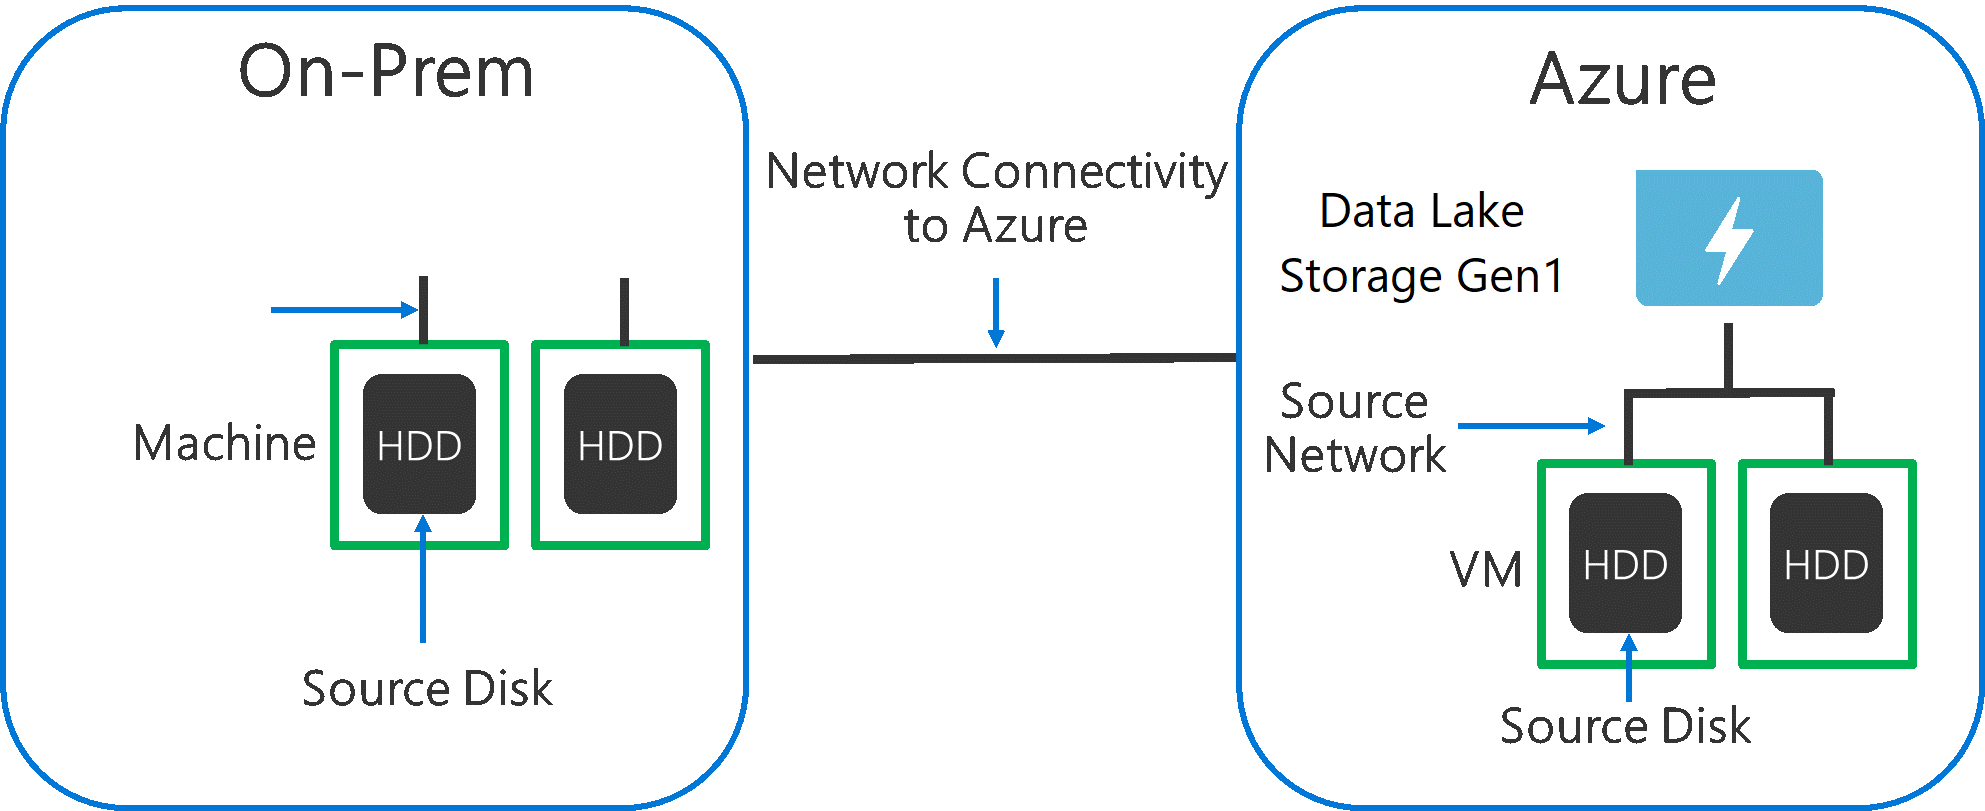 图中显示了源硬件、源网络硬件以及到 Data Lake Storage Gen1 的网络连接可能会成为瓶颈。